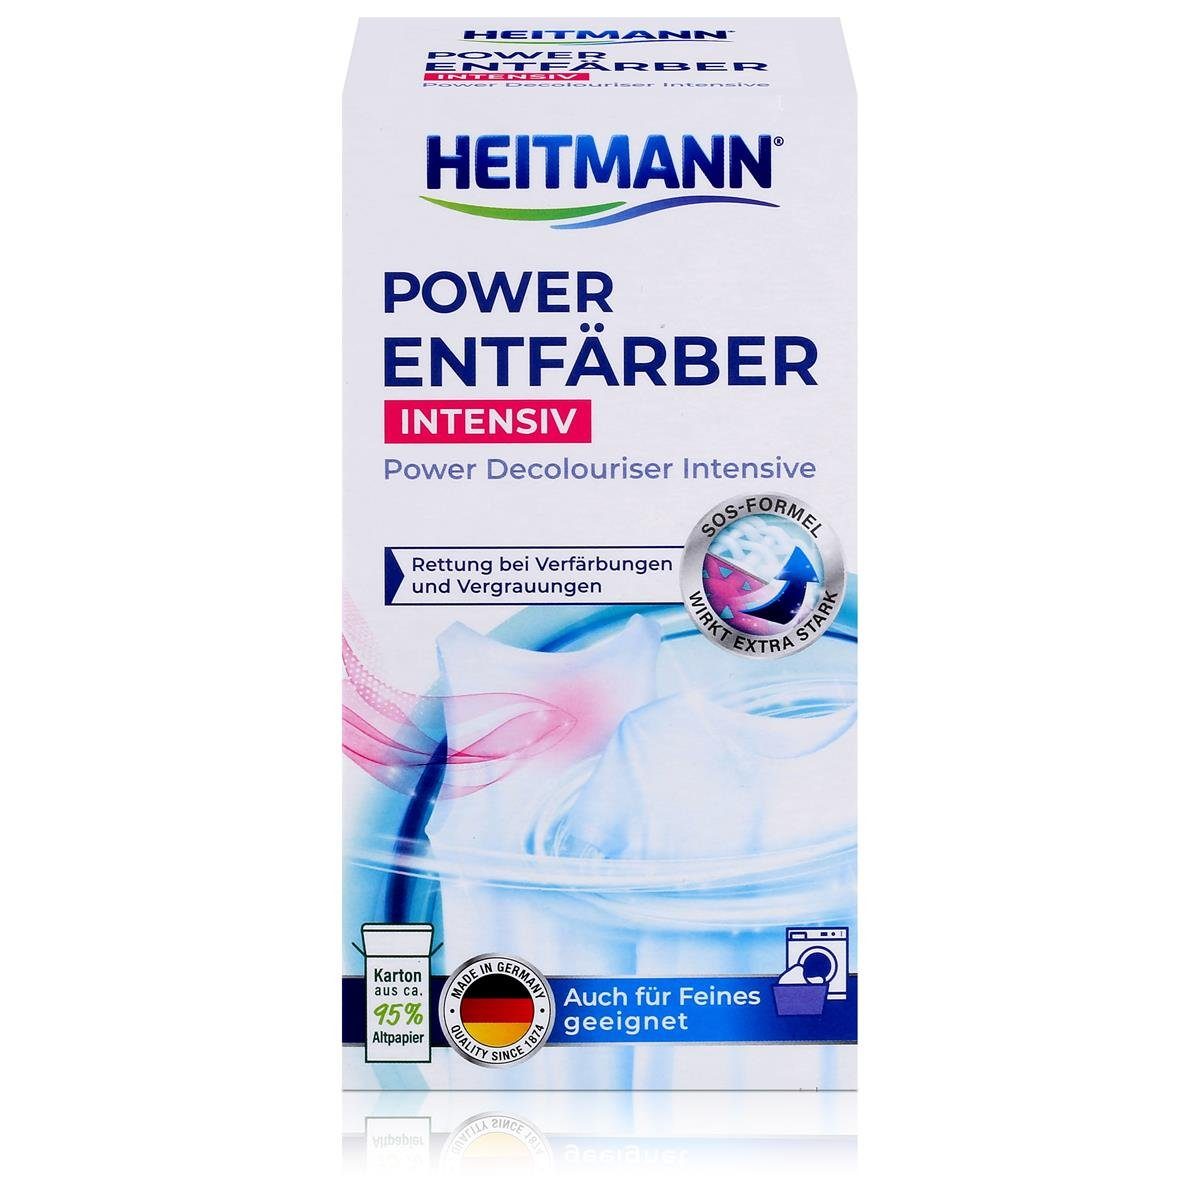 HEITMANN Heitmann Power 250g (1er Pack) Spezialwaschmittel Intensiv Entfärber